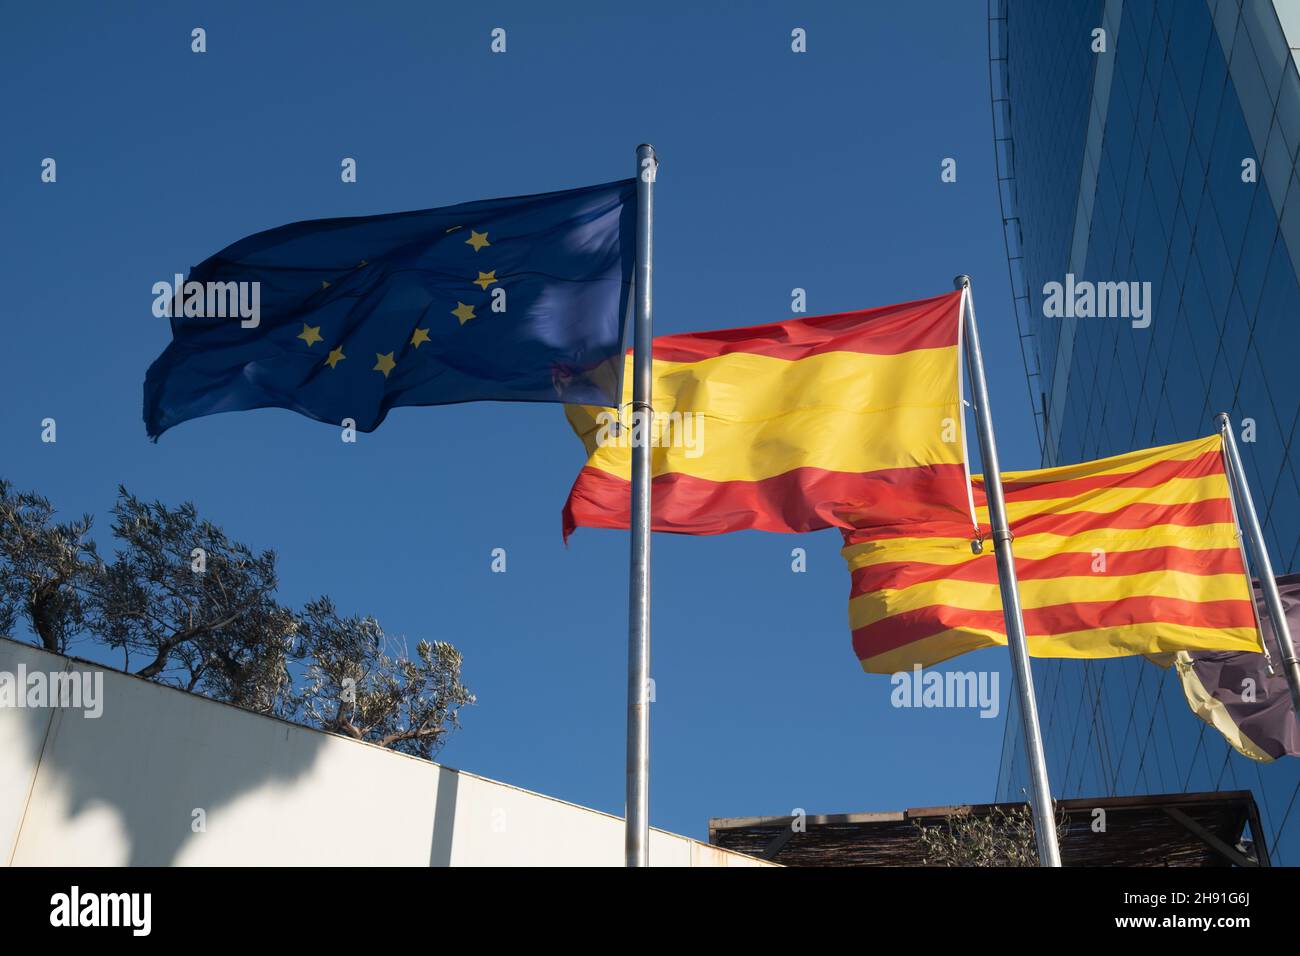 Flaggen der EU, Spaniens und Kataloniens winken am Himmel Stockfoto